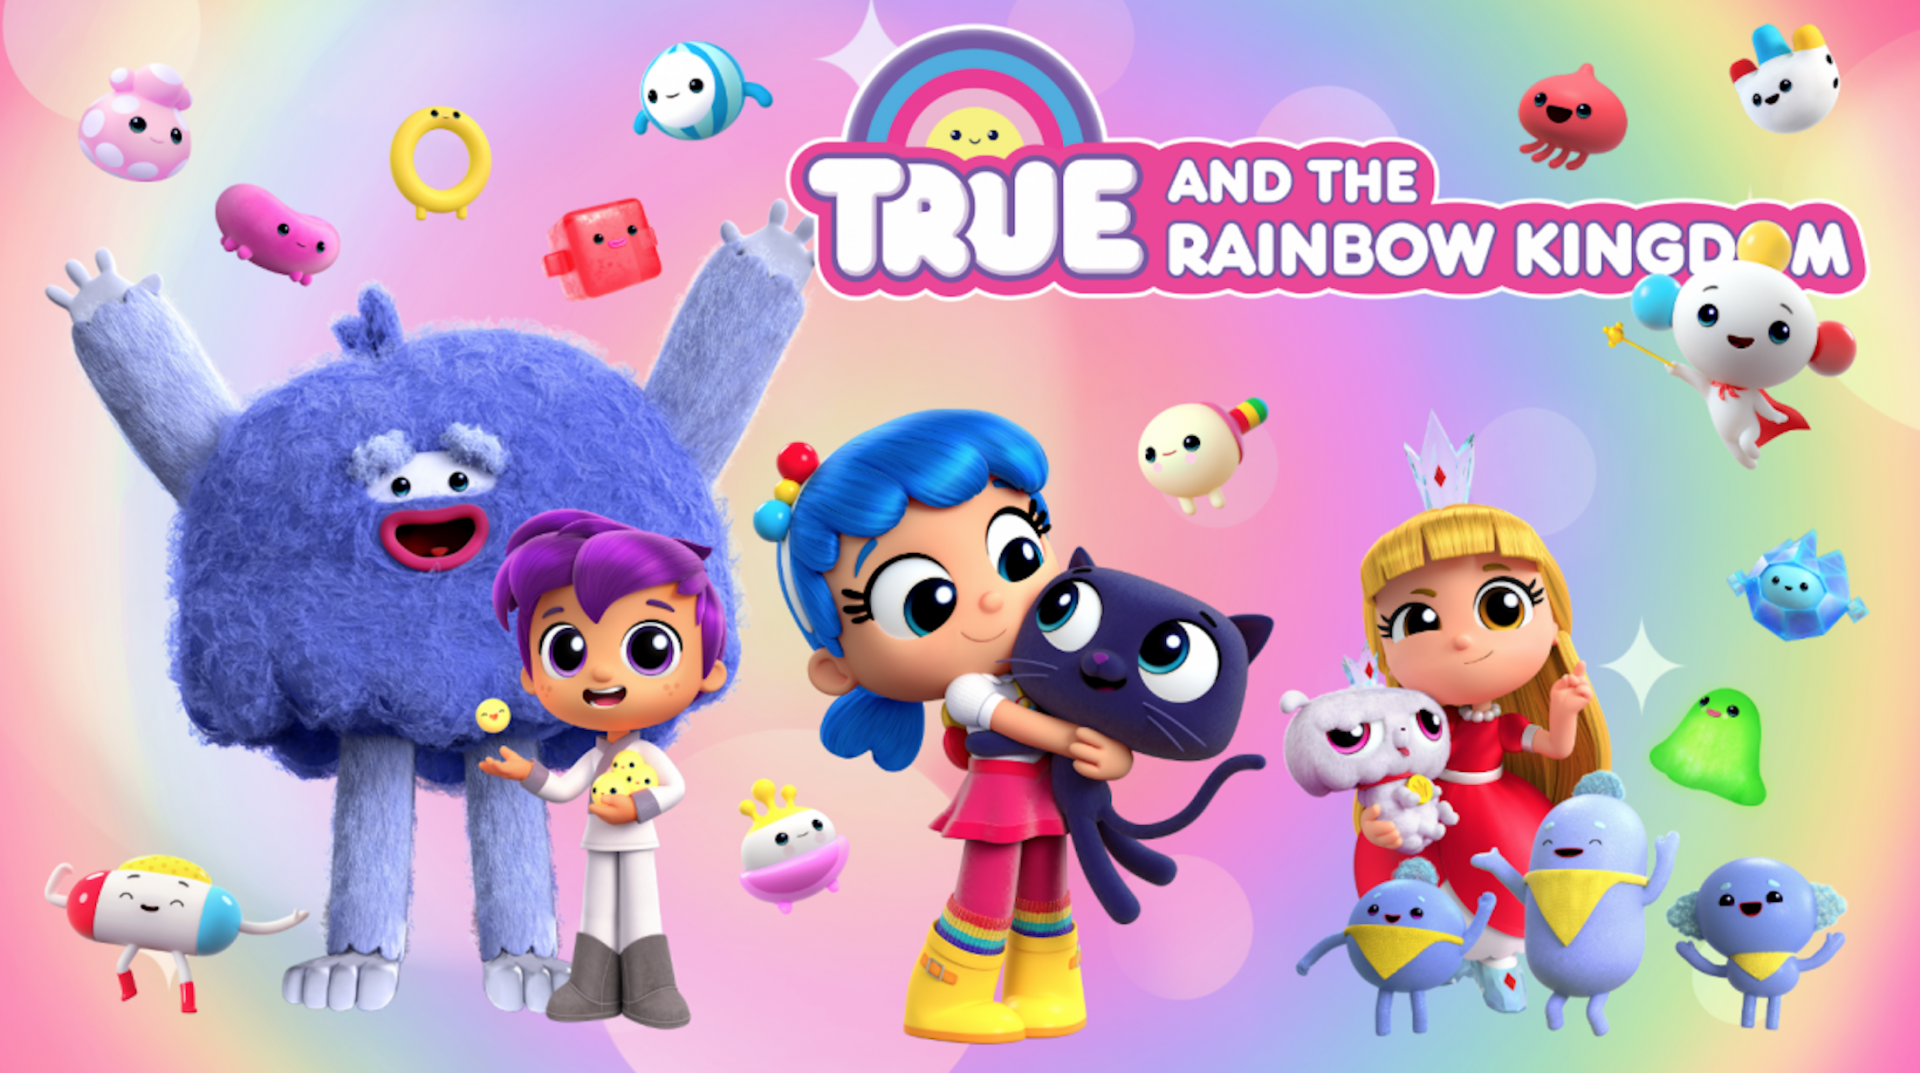 小真与彩虹王国 英文版 第3季《True and the Rainbow Kingdom》在线观看